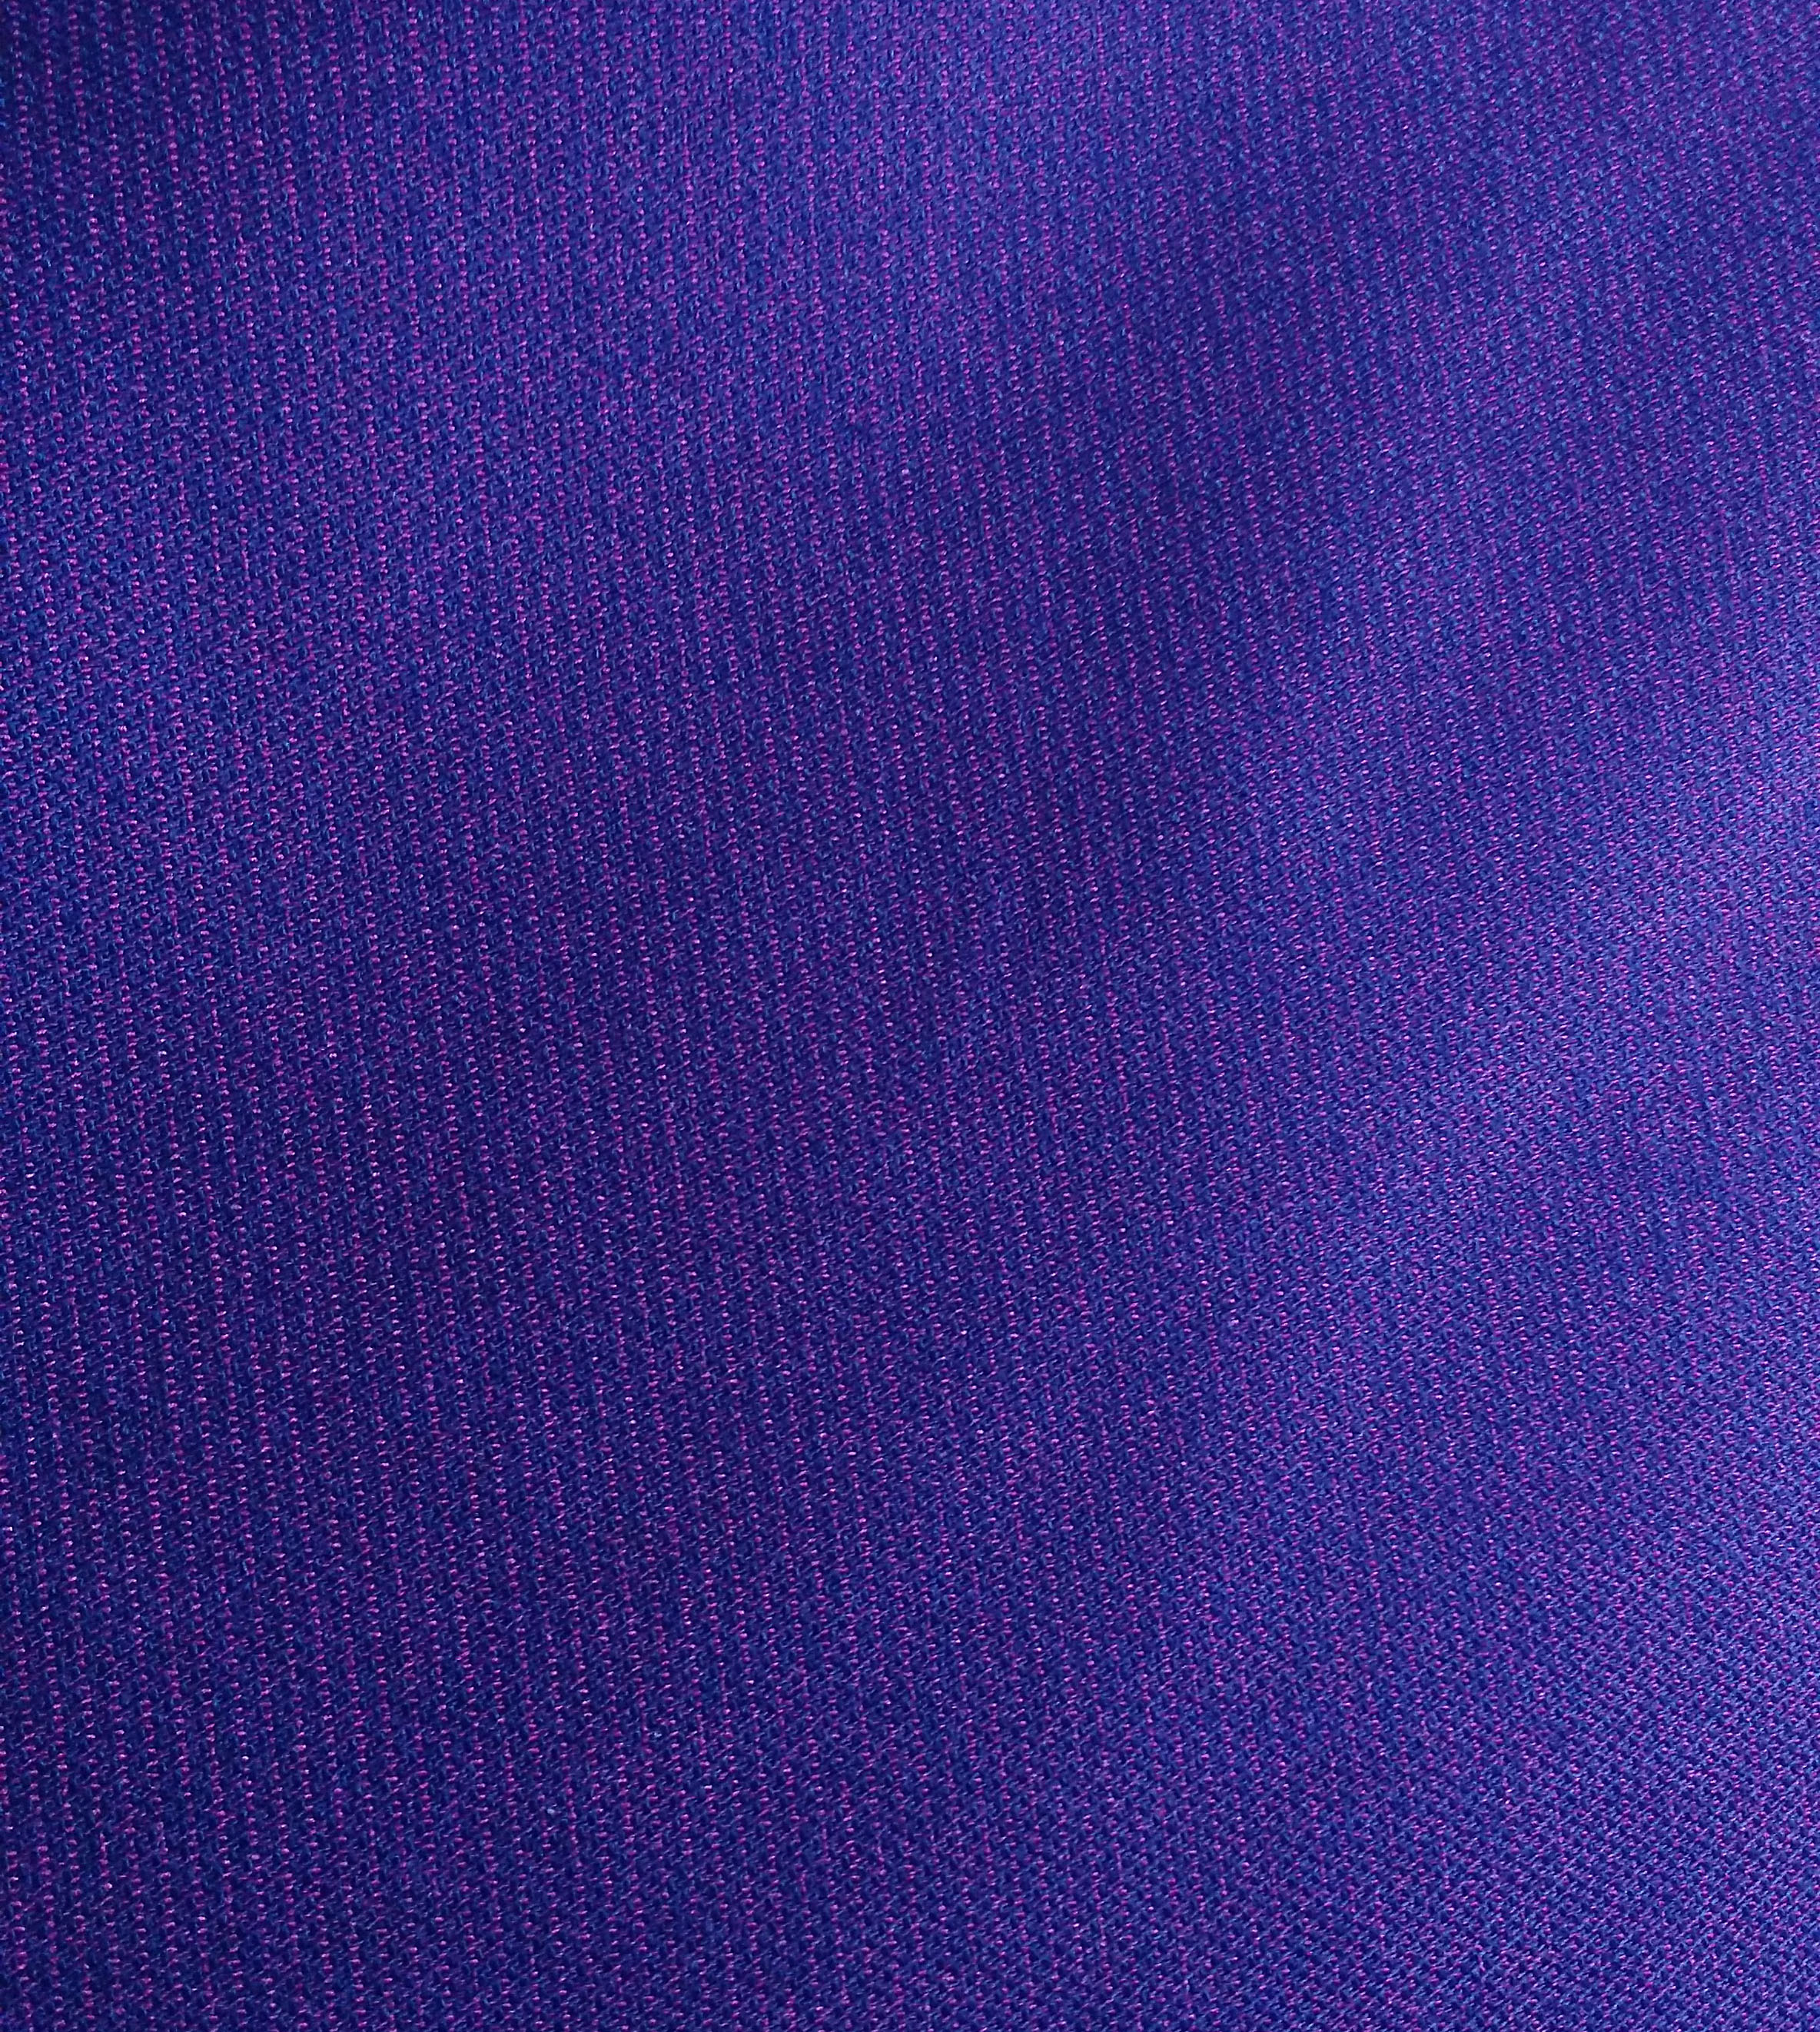 D1722 Siro Phil striped fabric